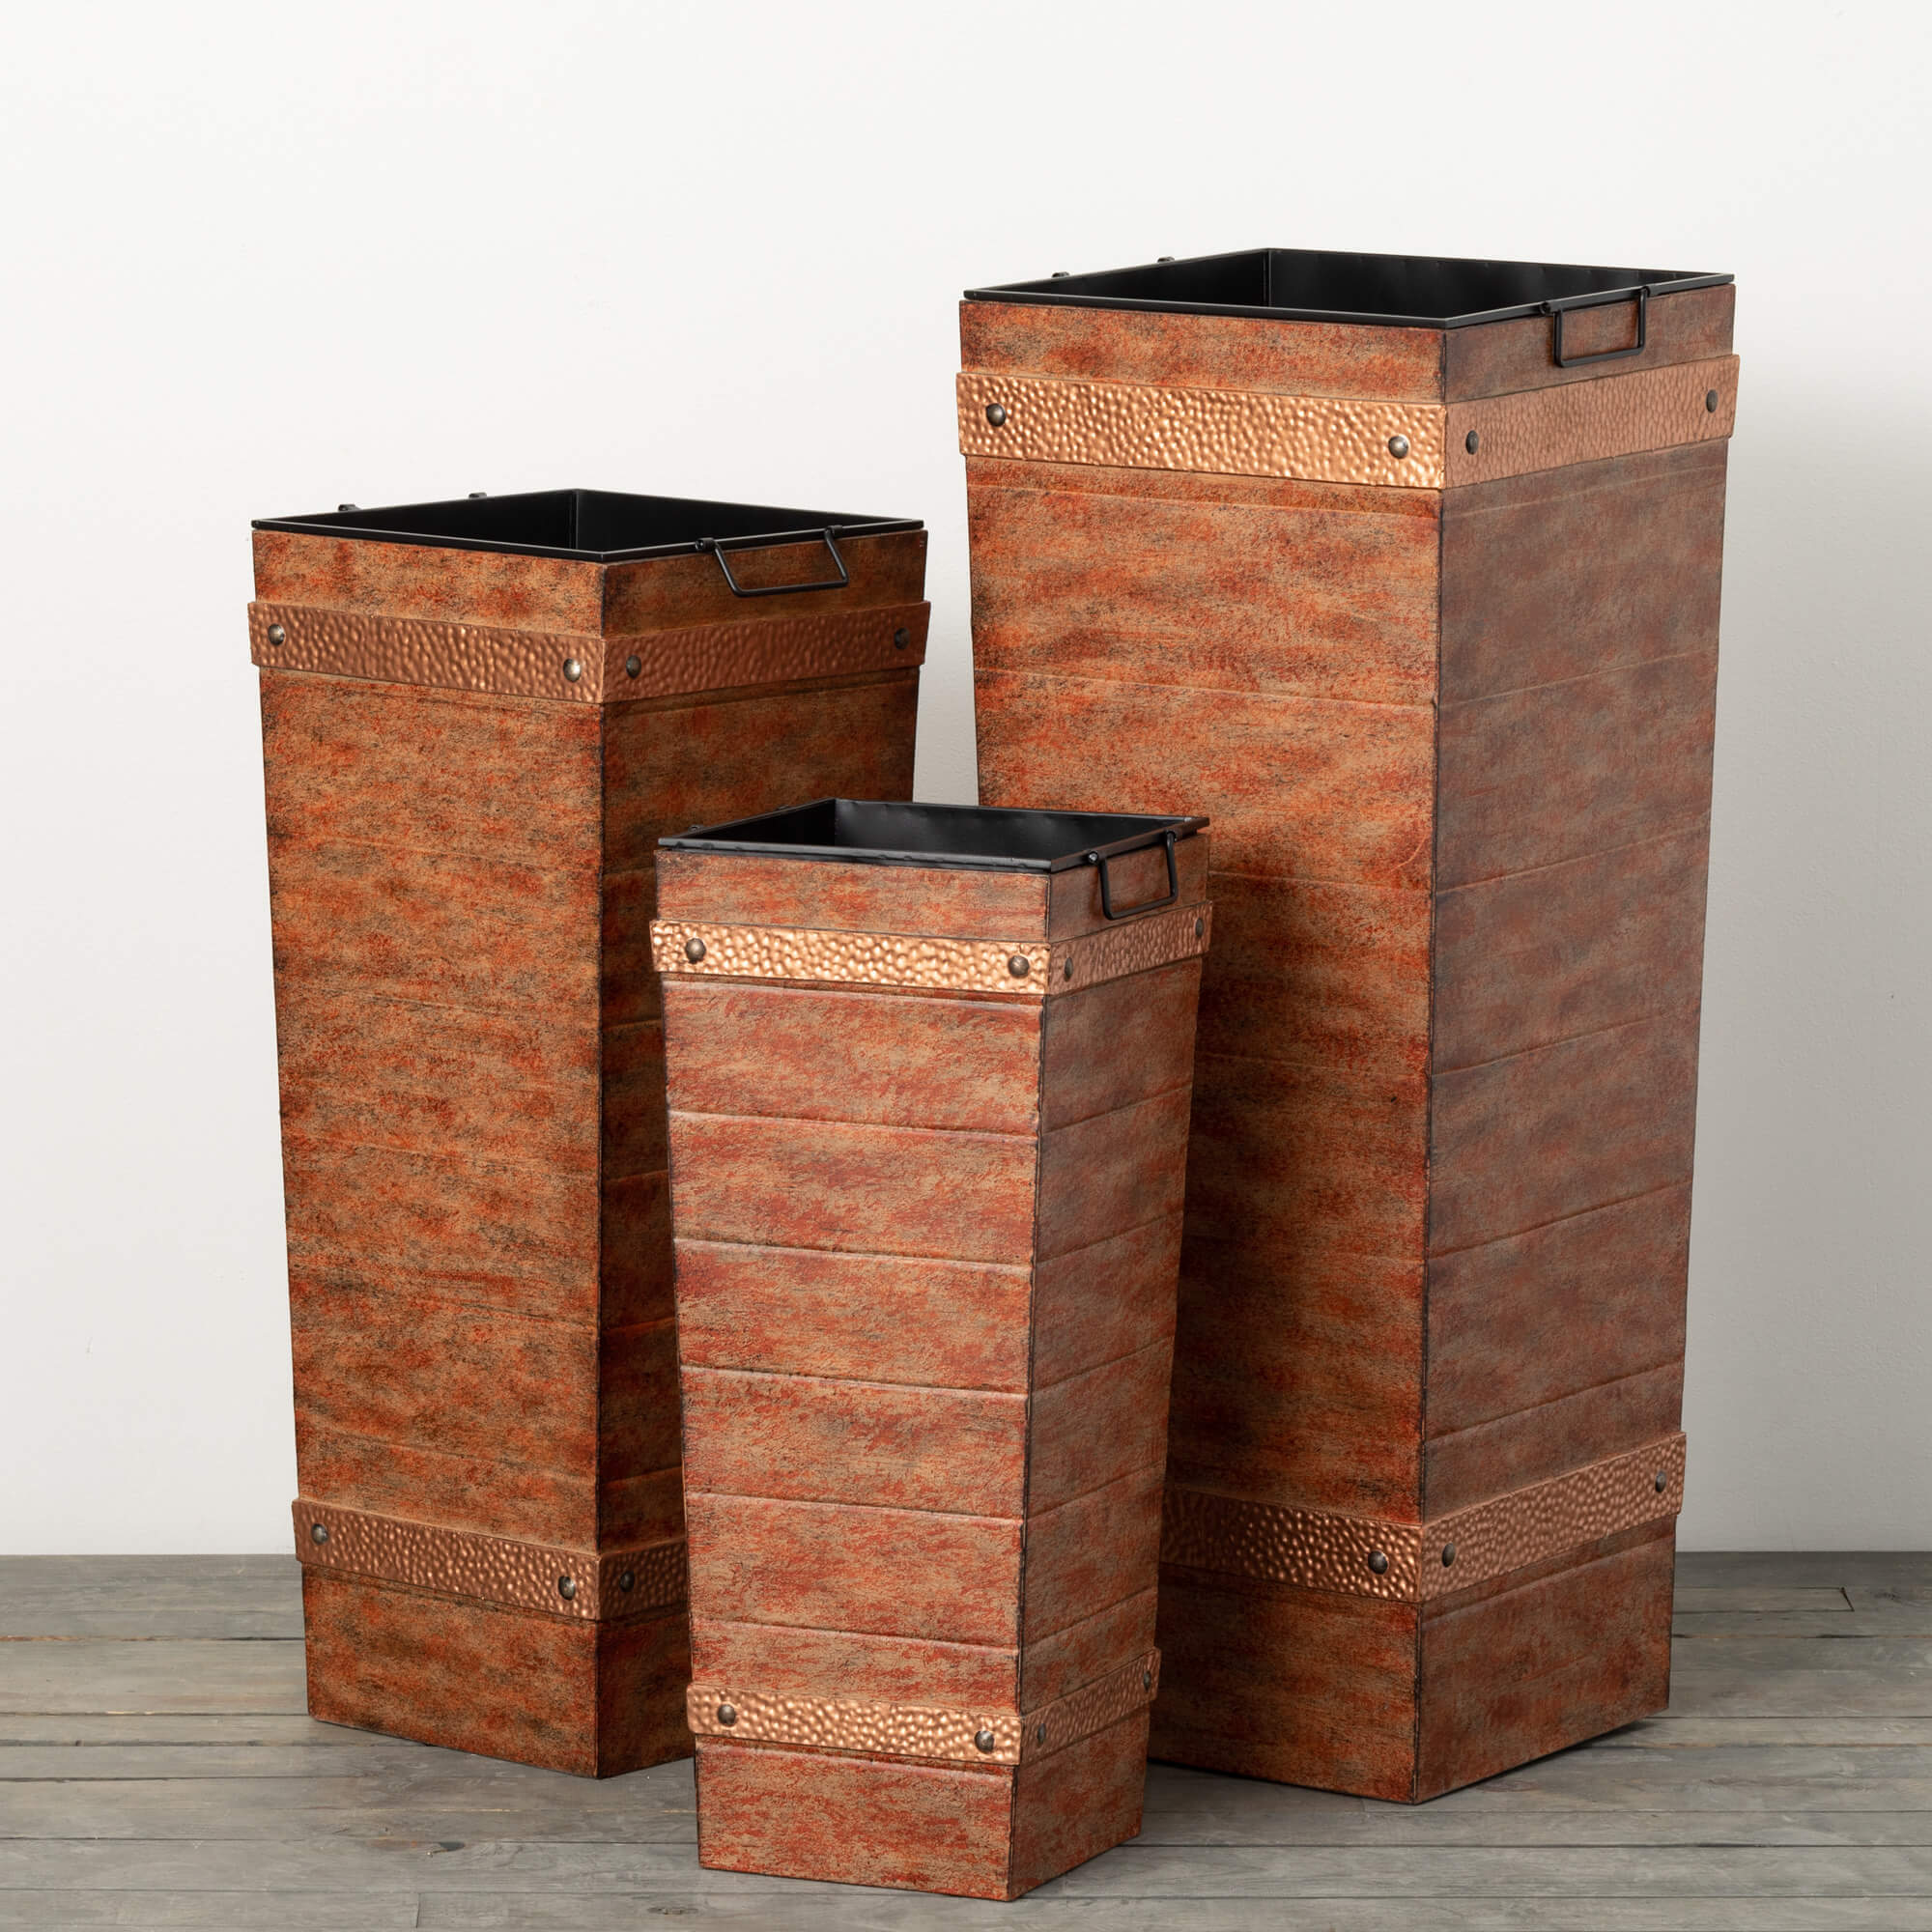 Copper Front Porch Pots Set of 3  - Online Only